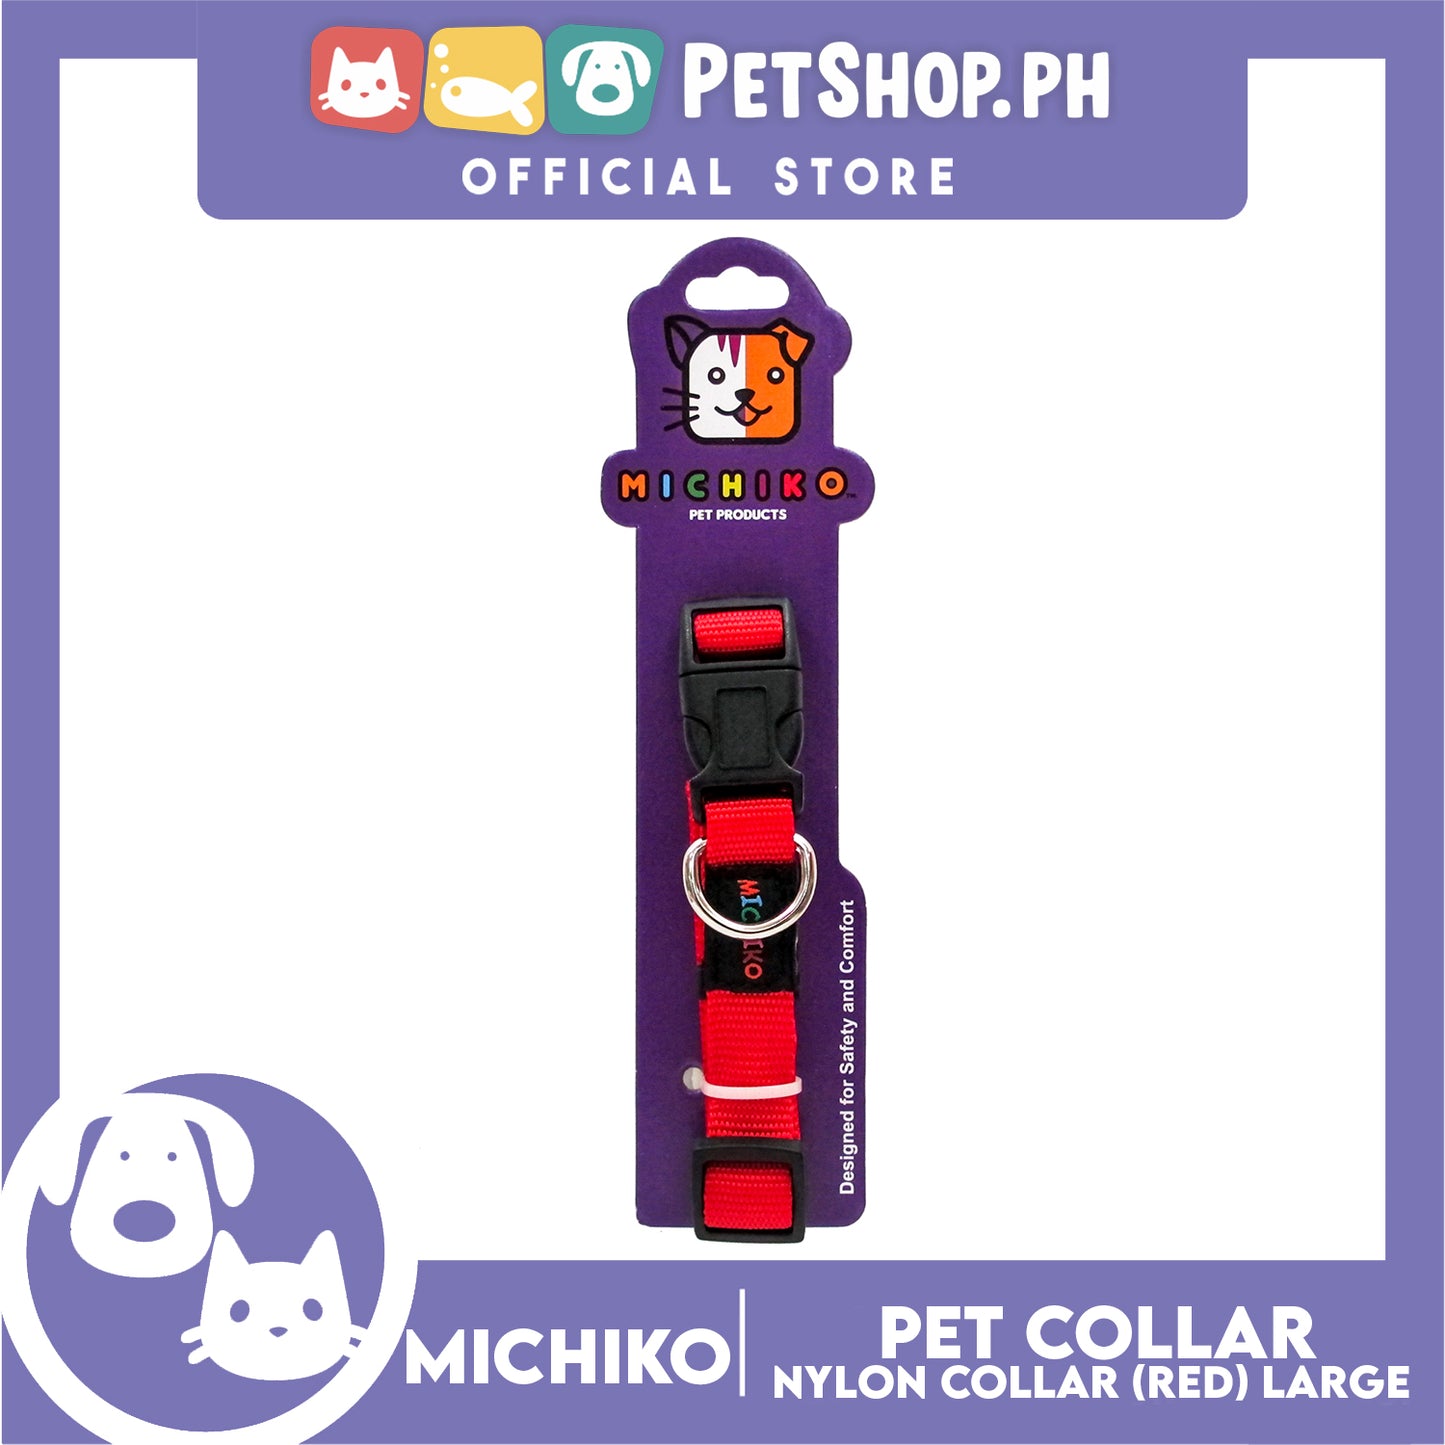 Michiko Nylon Collar Red (Large) Pet Collar